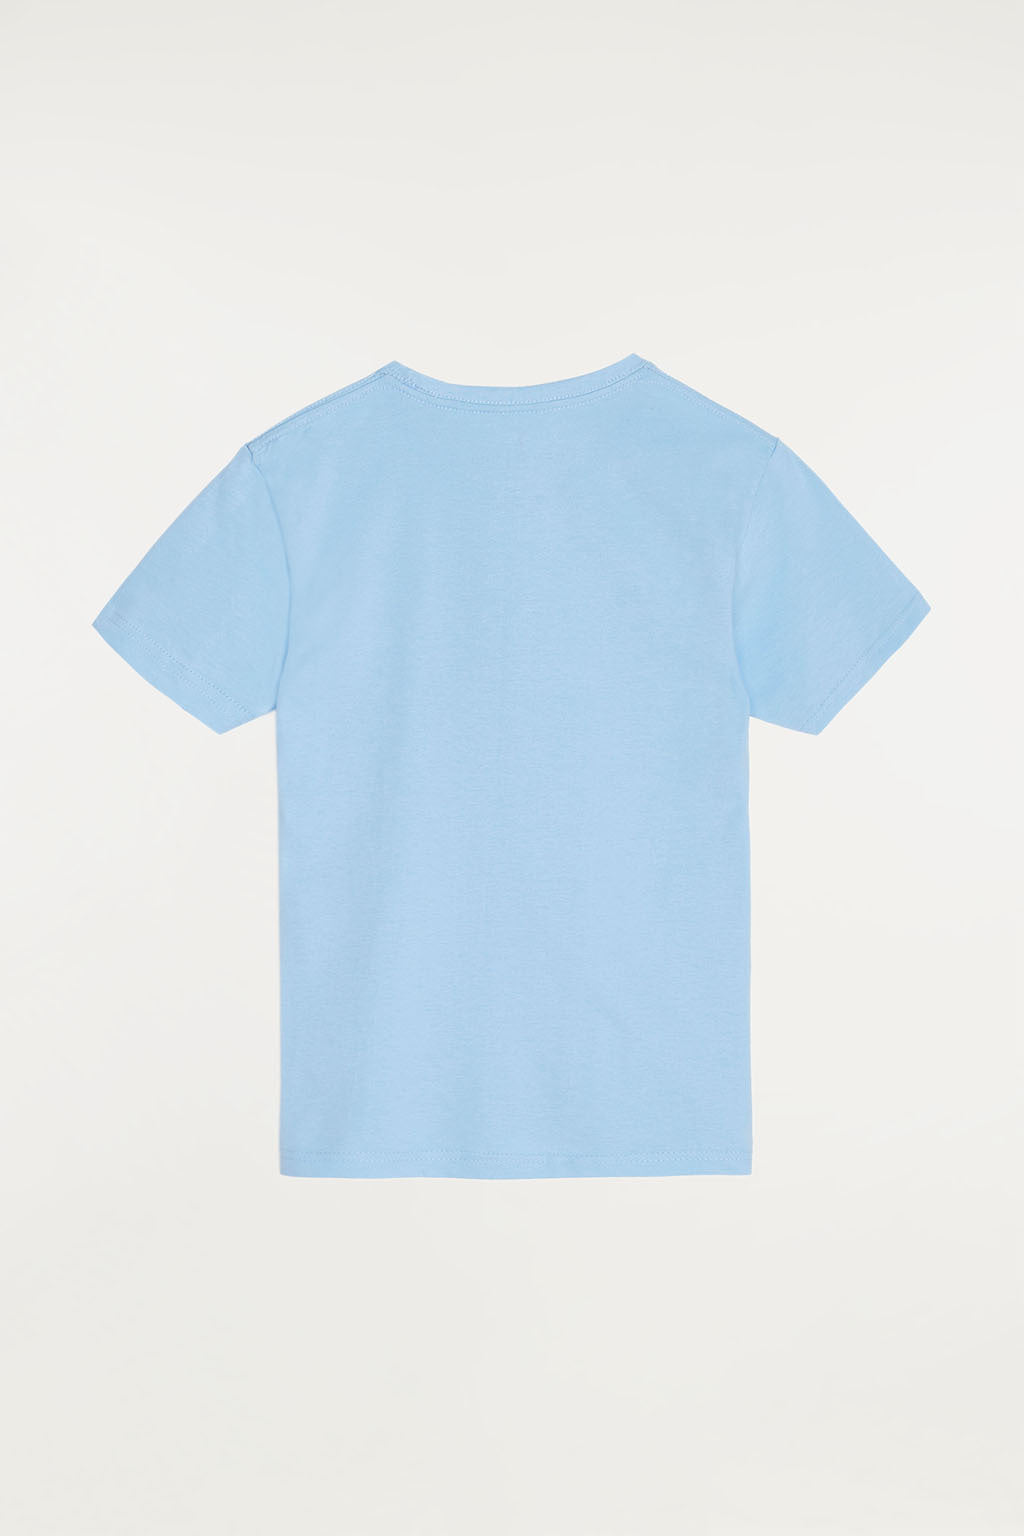 Camiseta azul celeste con pequeño logo bordado  | NIÑOS | POLO CLUB